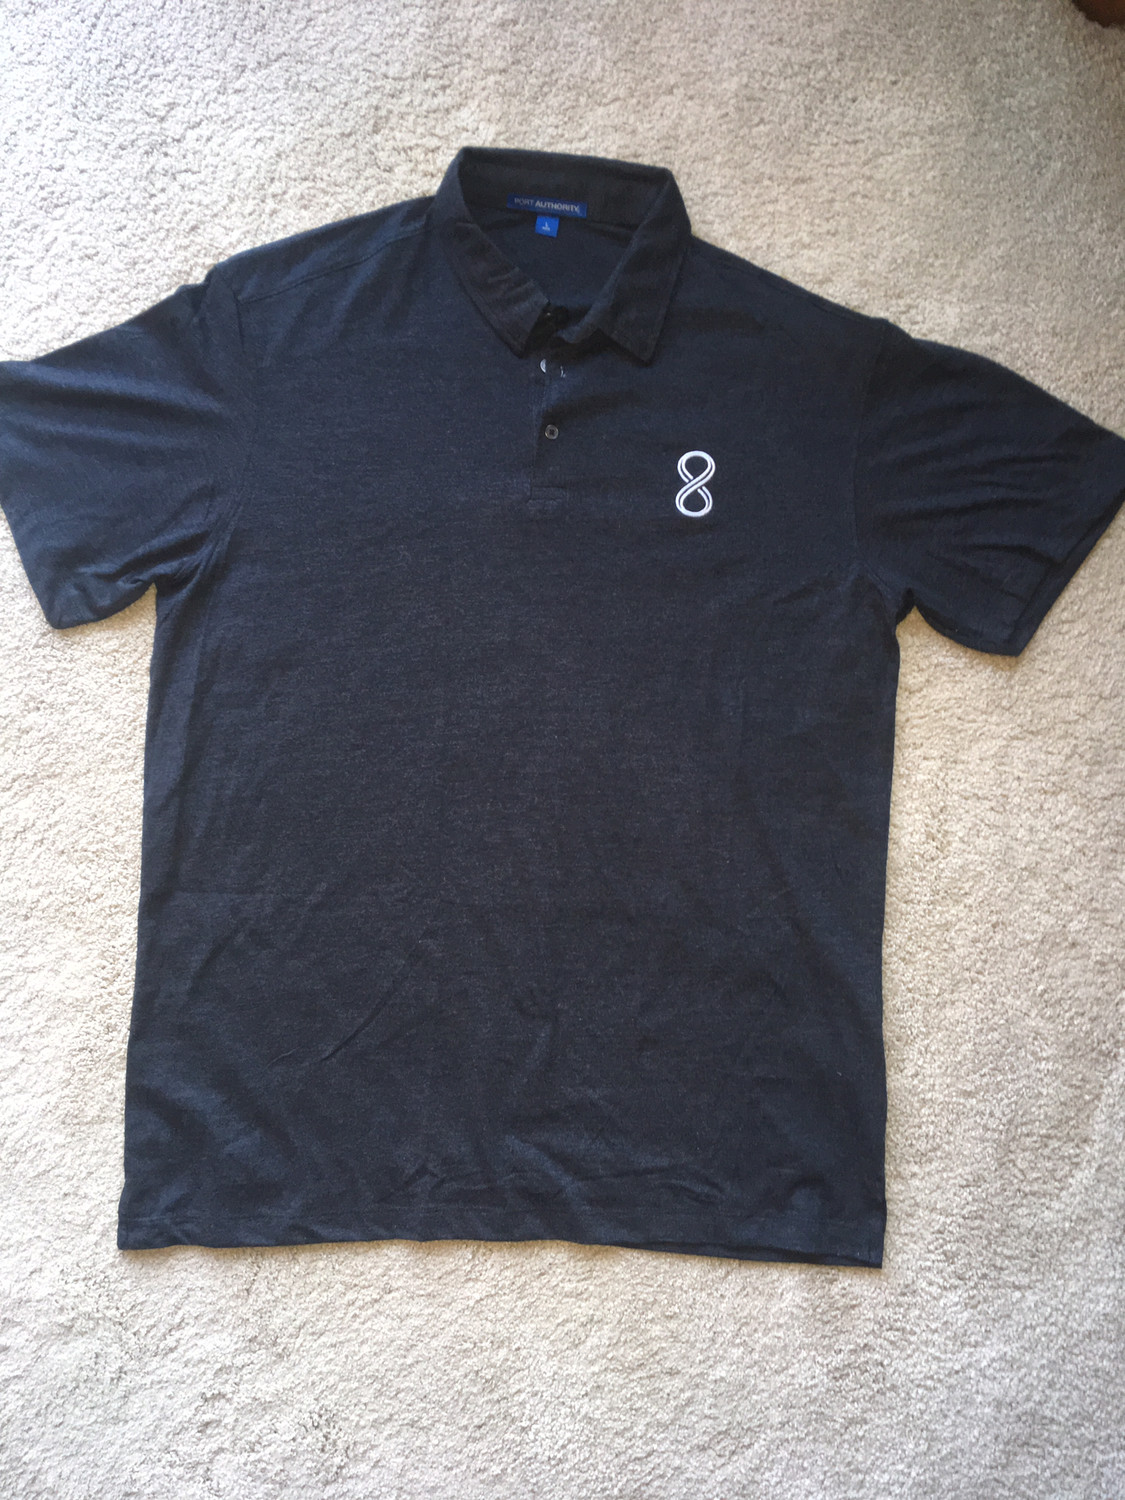 "8" Embroidered Polo Shirt